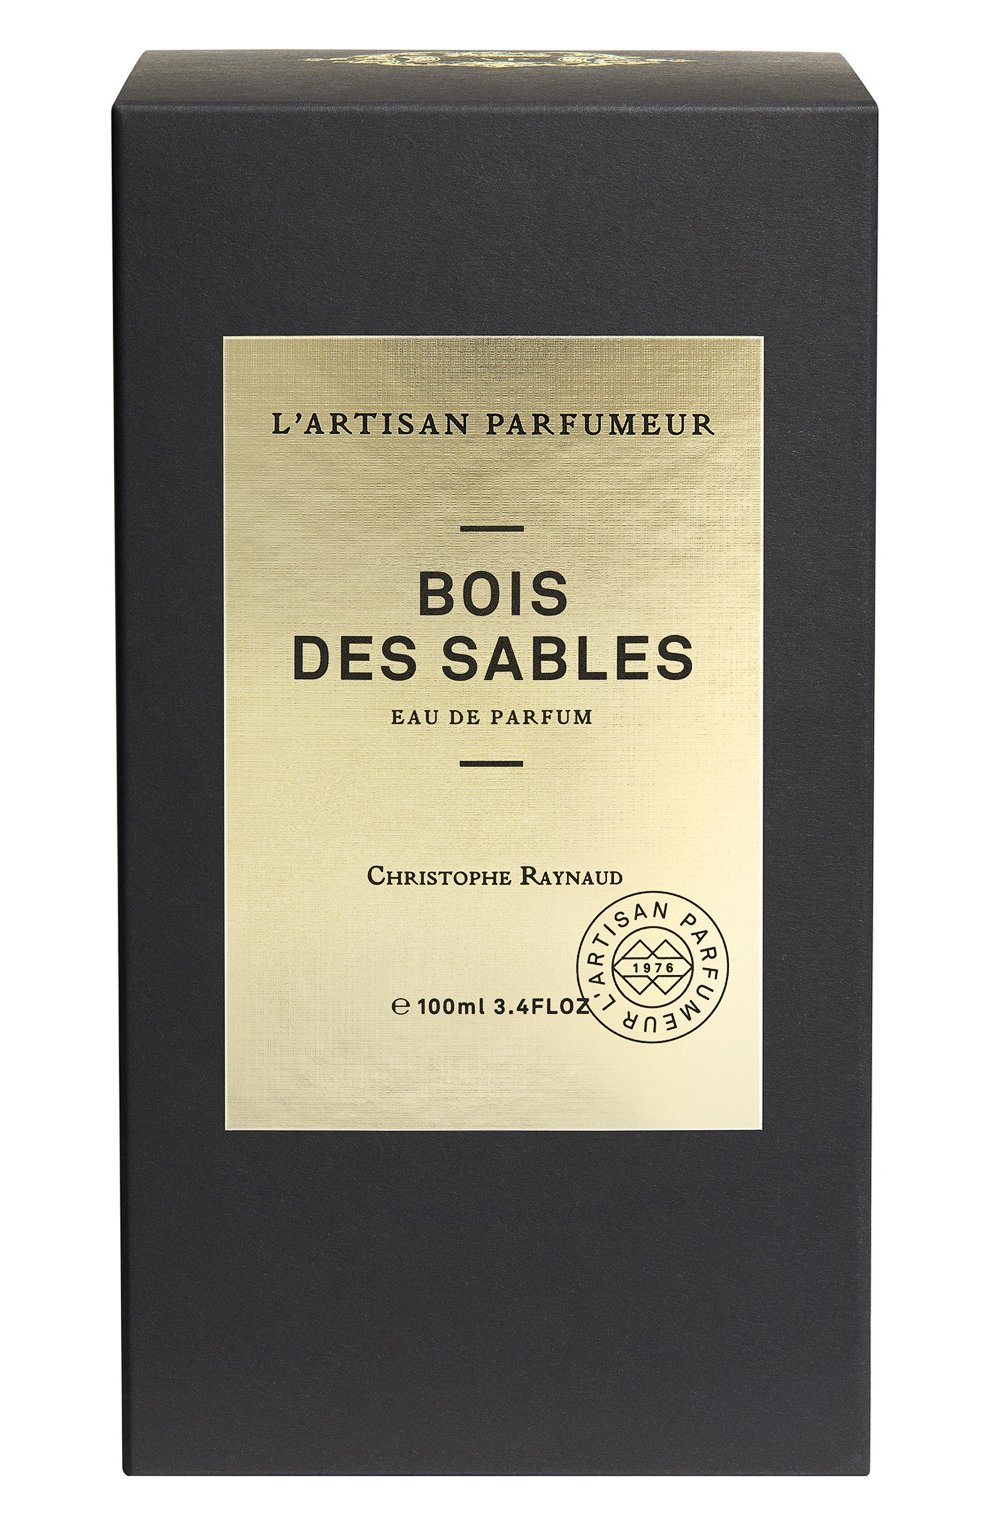 Парфюмерная вода bois des sables (100ml) L'ARTISAN PARFUMEUR бесцветного цвета, арт. 3660463012599 | Фото 2 (Ограничения доставки: flammable)